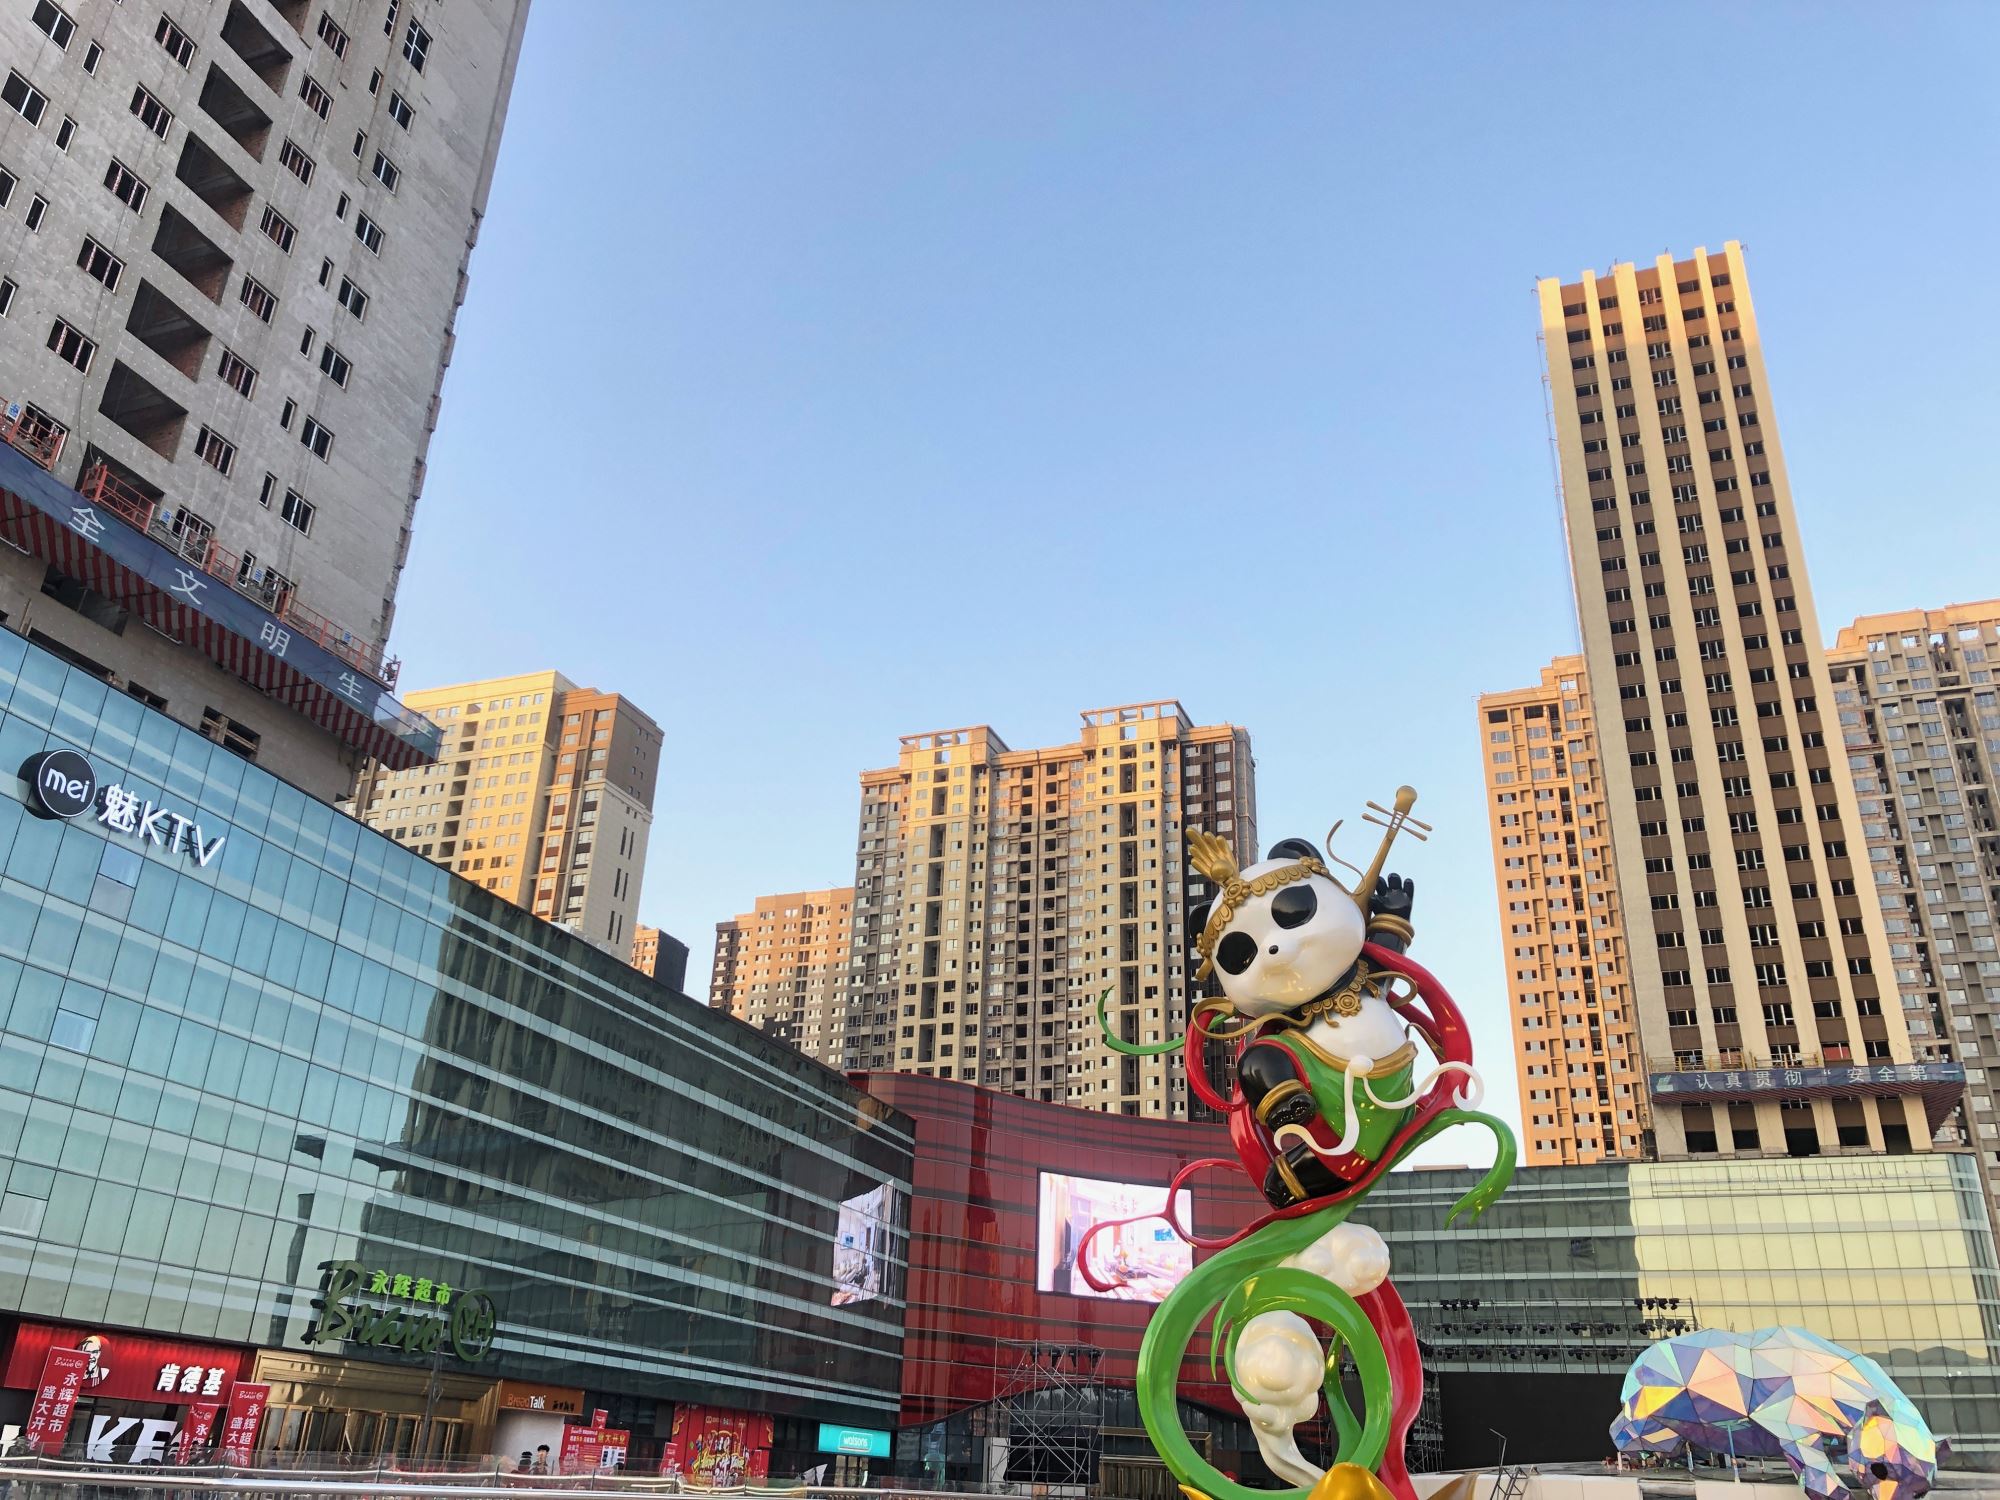 假日熊猫购物公园 :中国文化名片解锁主题商业新模式